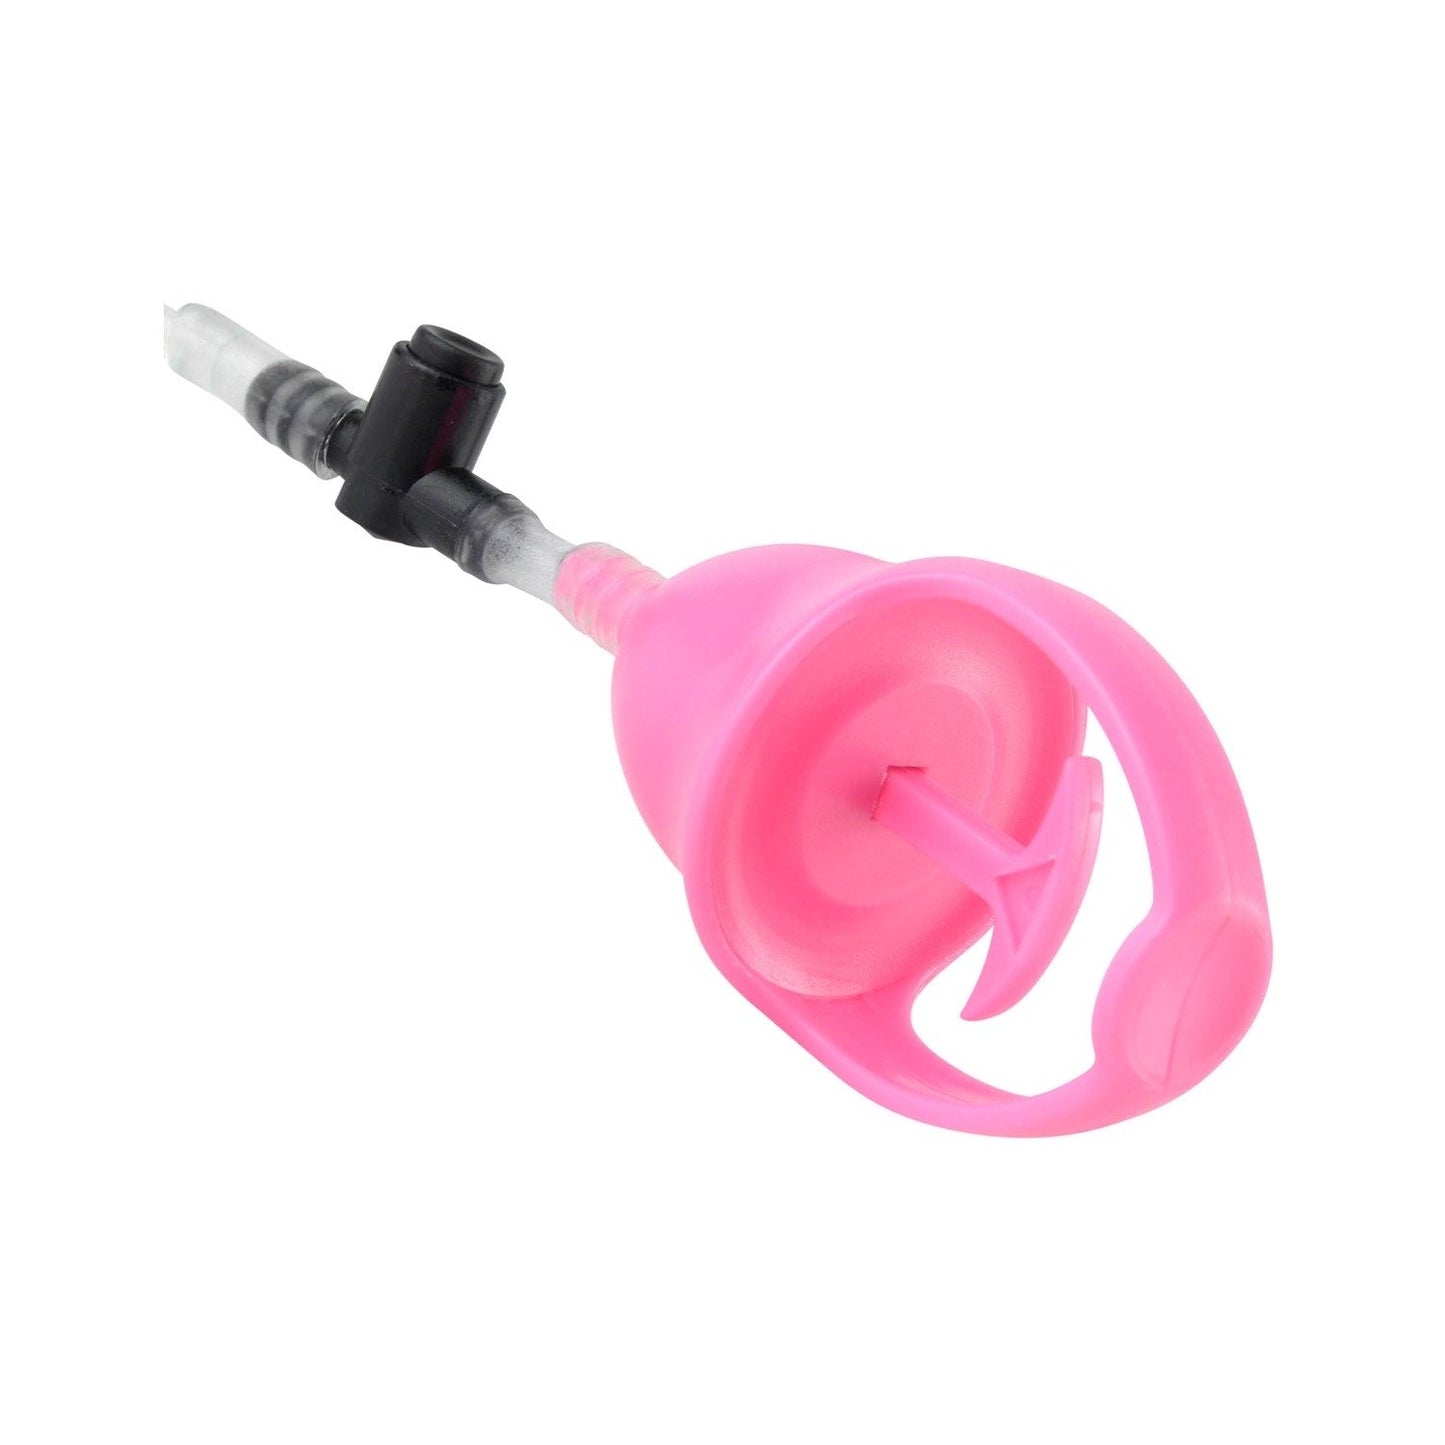 Vibrating Mini Pussy Pump - Pink Vibrating Pump